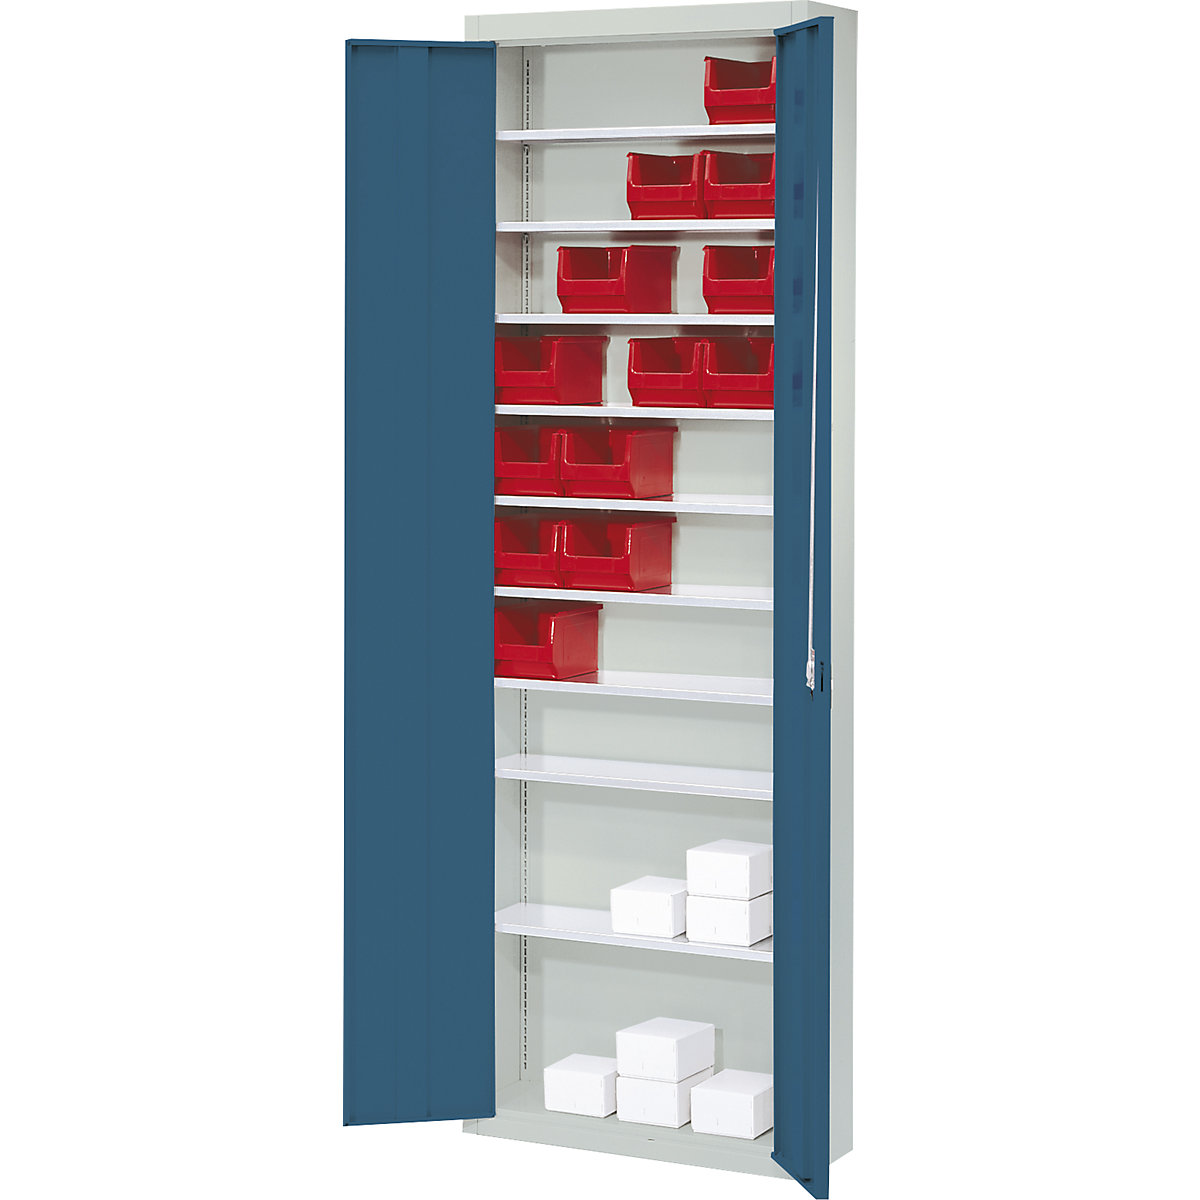 Skladiščna omara, brez odprtih skladiščnih posod – mauser, VxŠxG 2150 x 680 x 280 mm, dve barvi, korpus siv, vrata modra-4